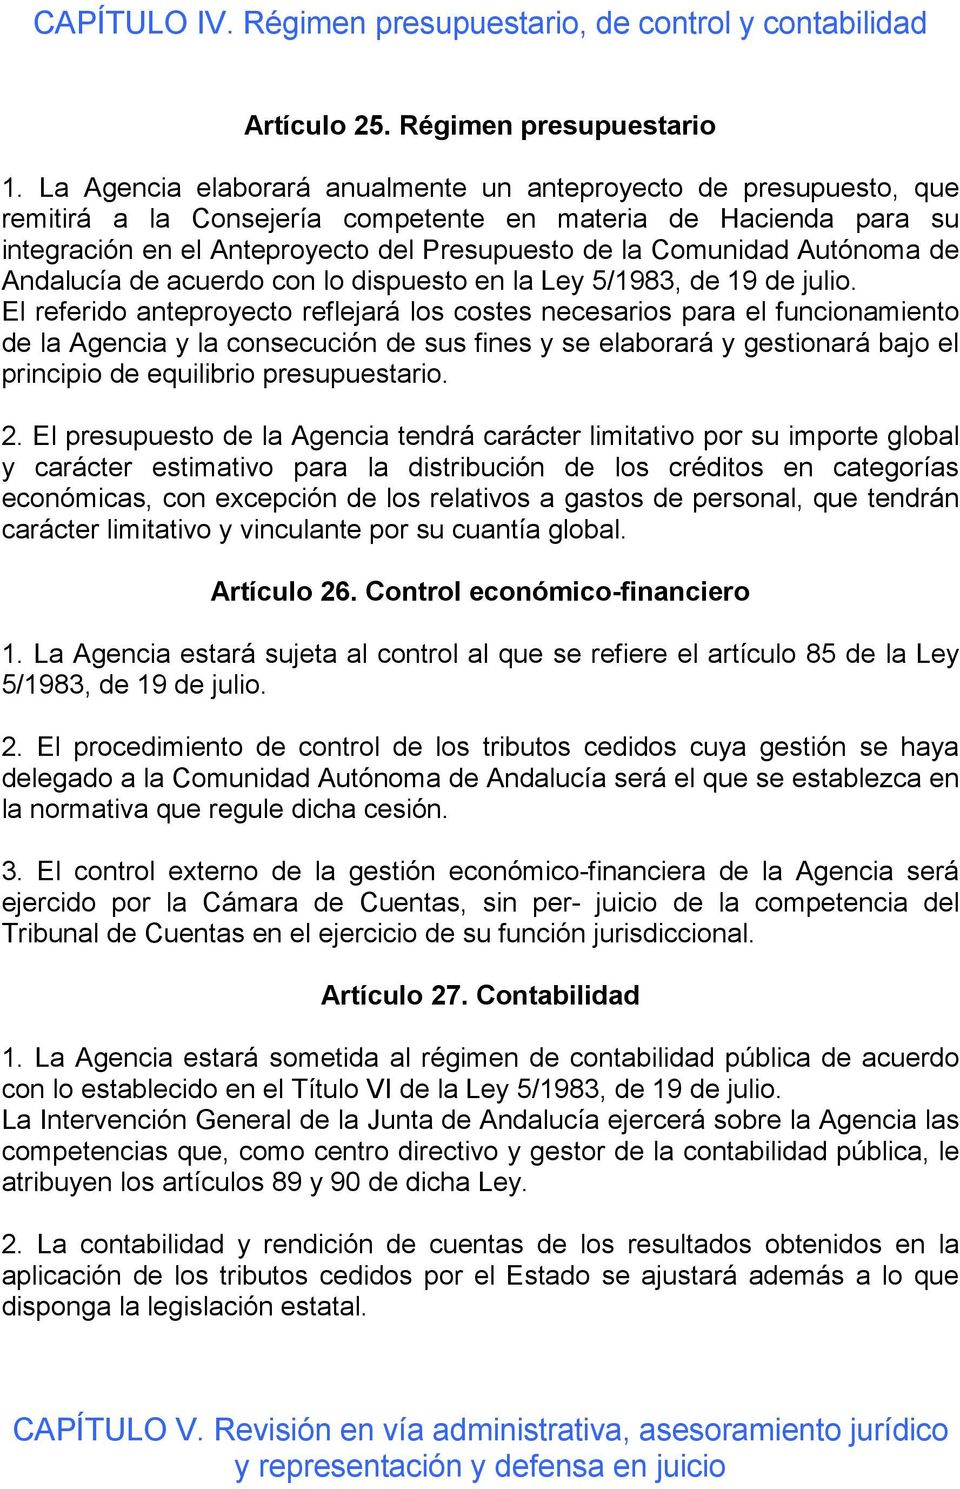 Autónoma de Andalucía de acuerdo con lo dispuesto en la Ley 5/1983, de 19 de julio.